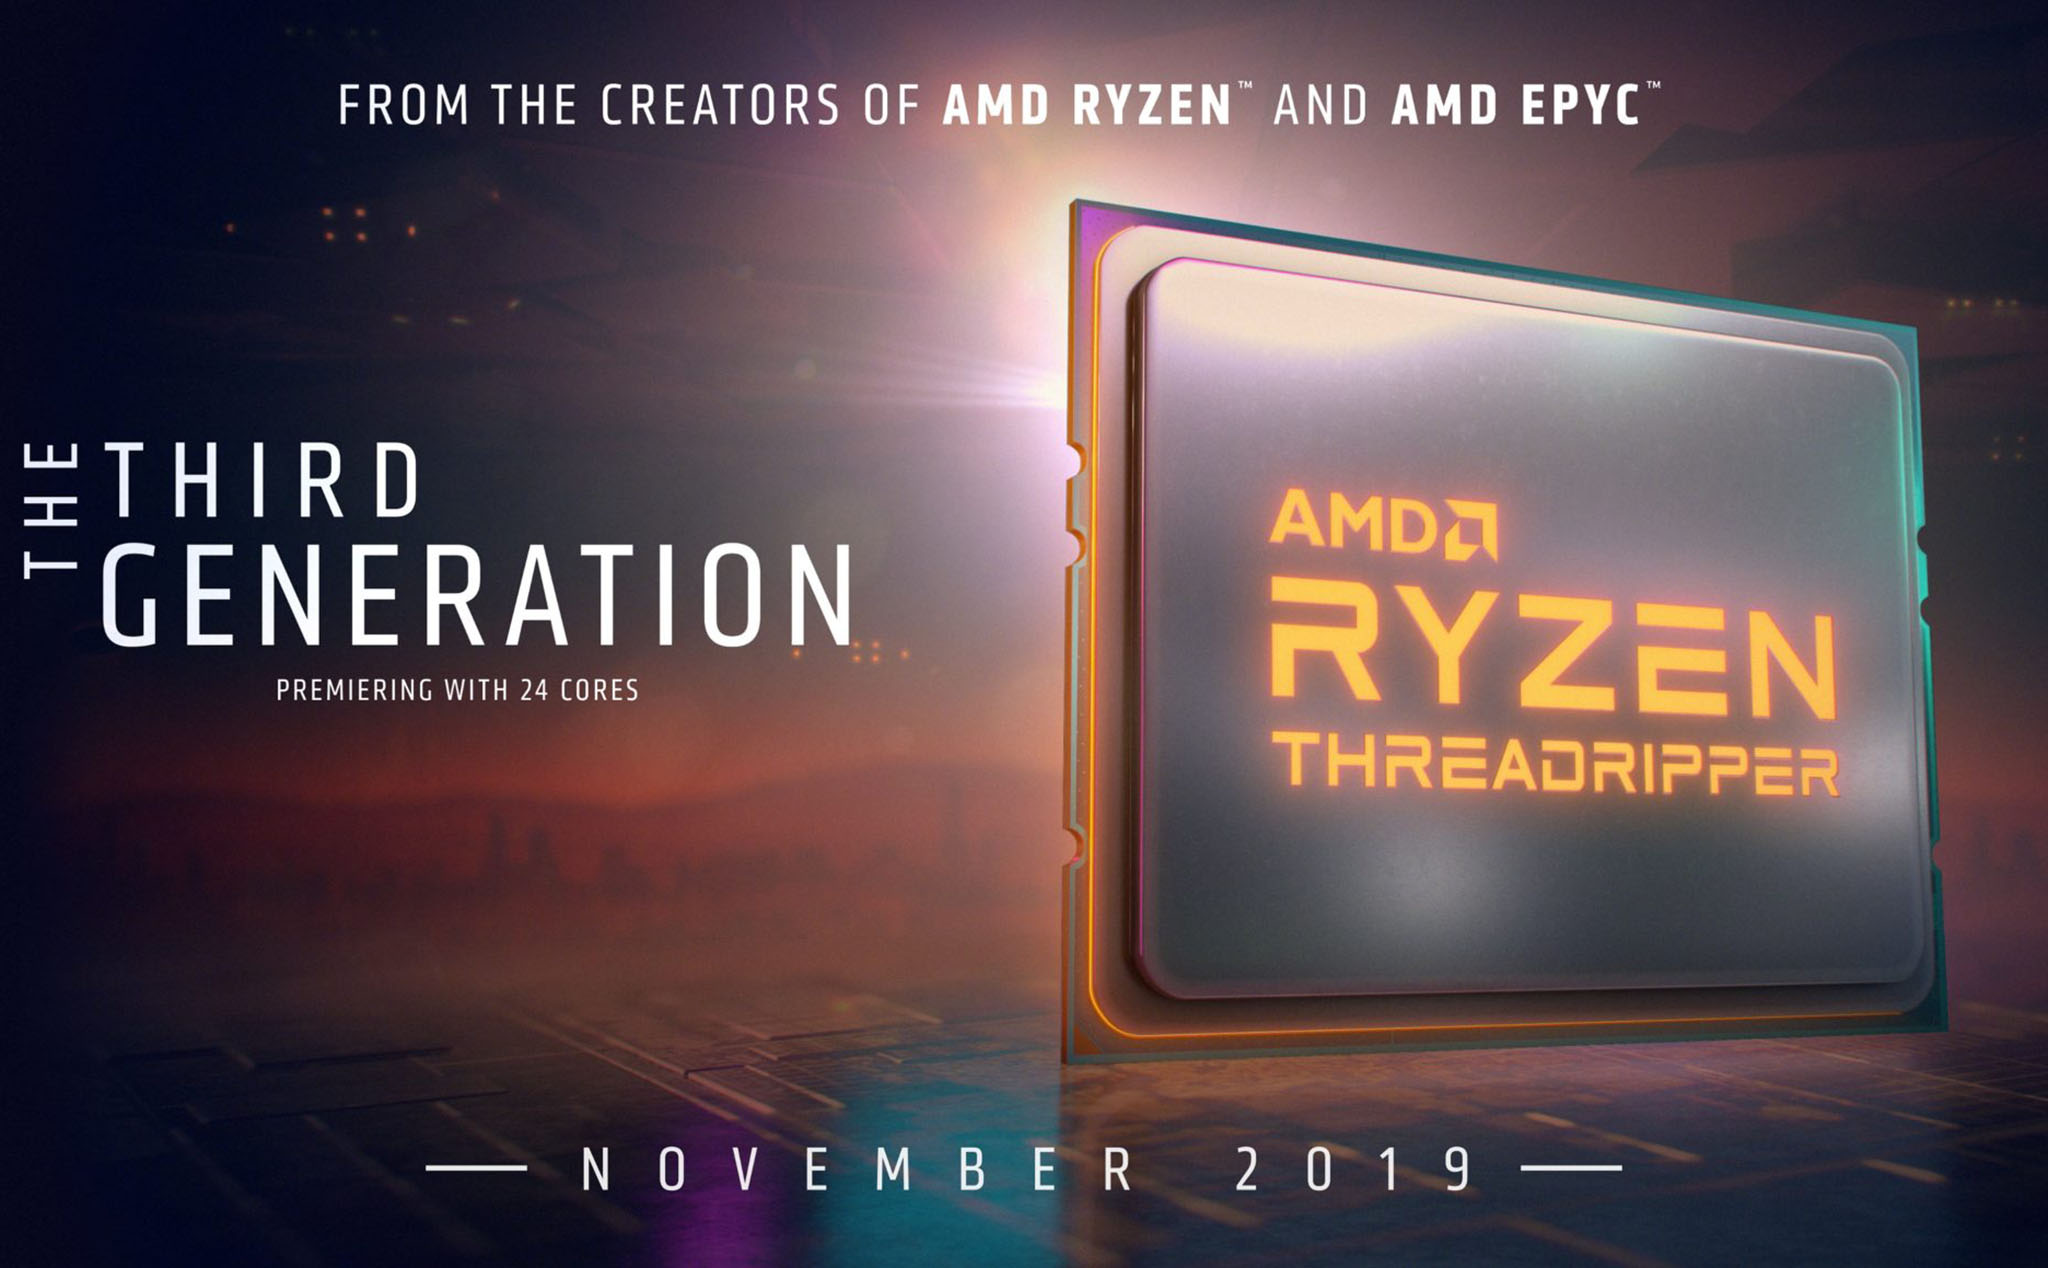 Ryzen Threadripper 3000 series, tối đa 64 nhân sẽ xuất hiện vào tháng 11 cùng loạt chipset mới